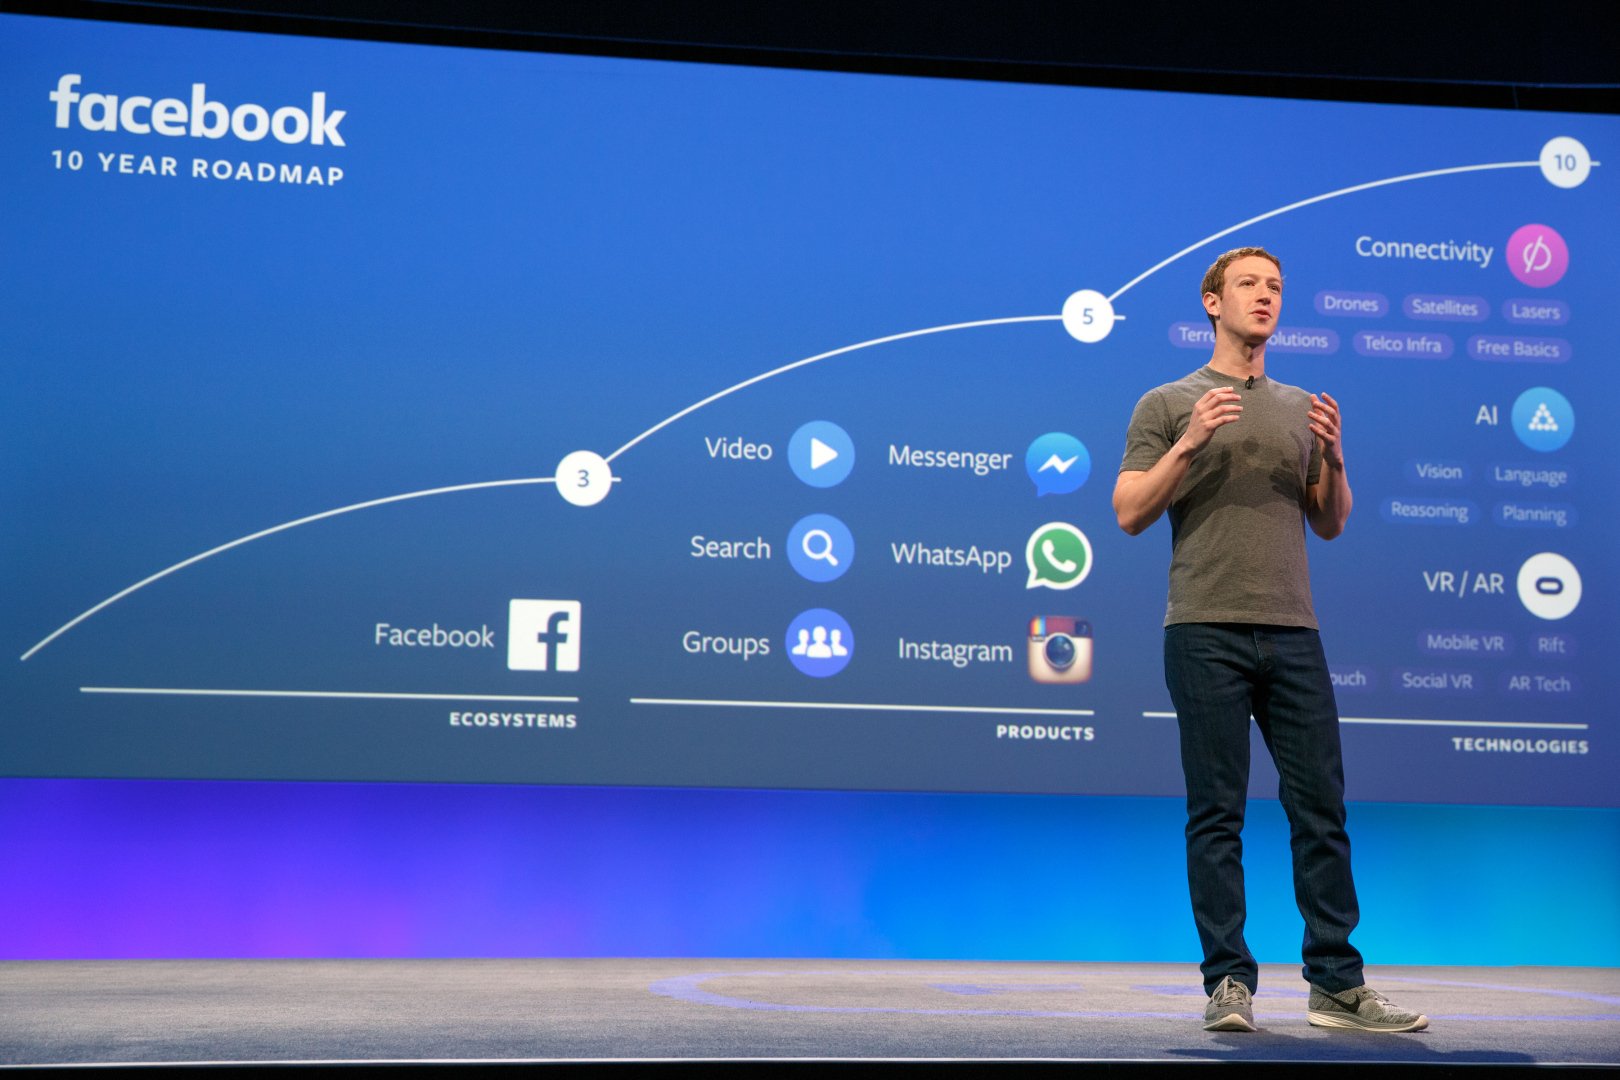 El fundador de Facebook explicando el roadmap de la empresa. Los subtítulos automáticos en video son parte del plan.